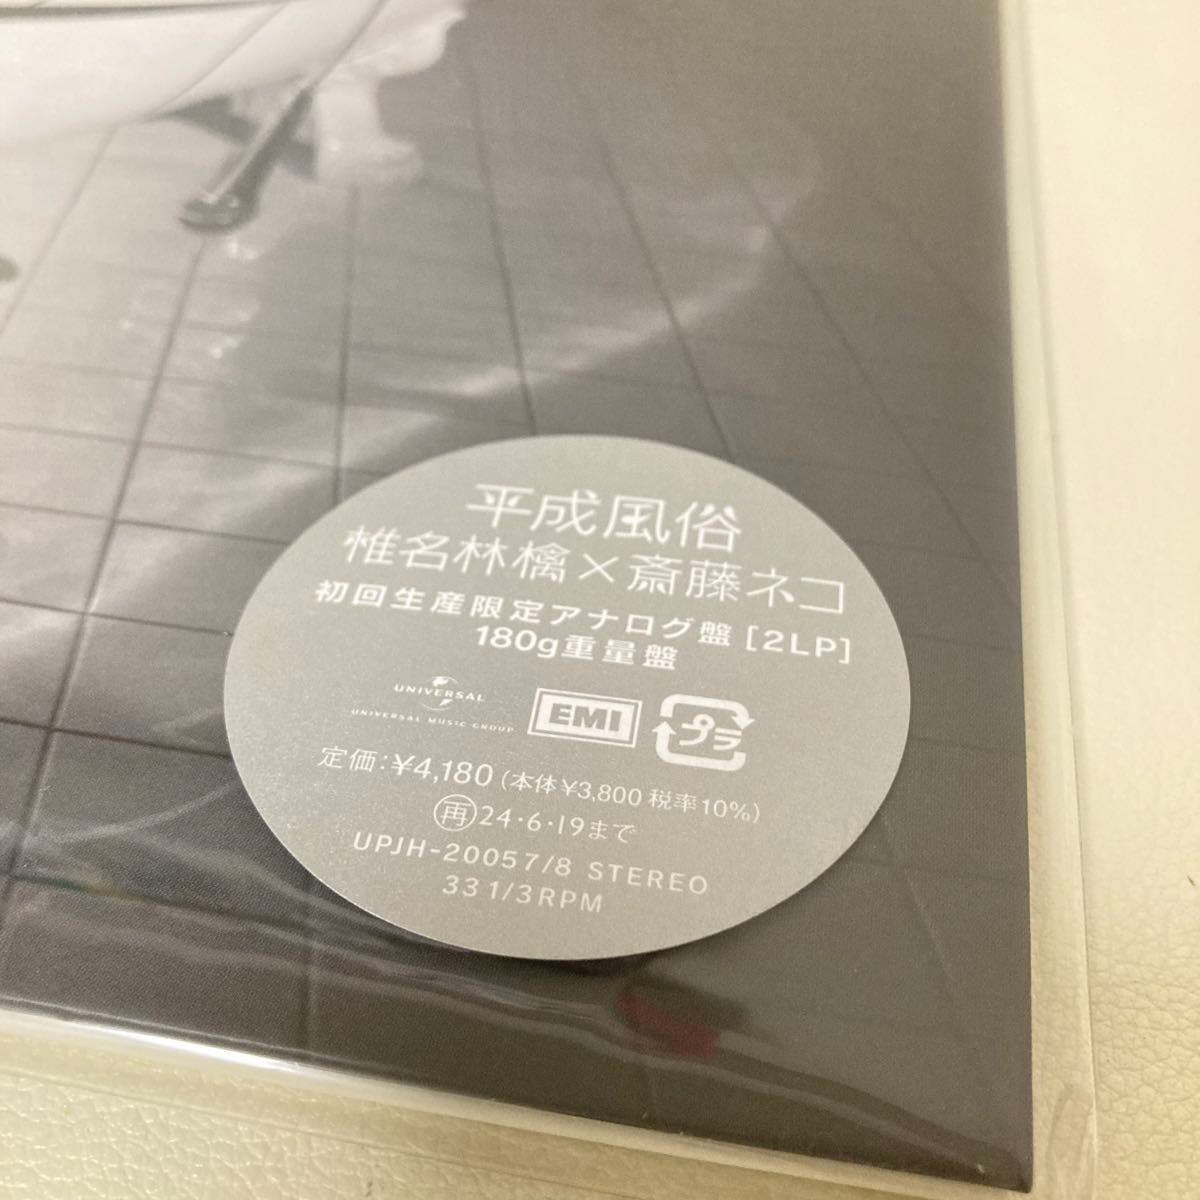 【新品】 椎名林檎 平成風俗 レコード LP 初回生産限定盤 アナログ盤 2枚組